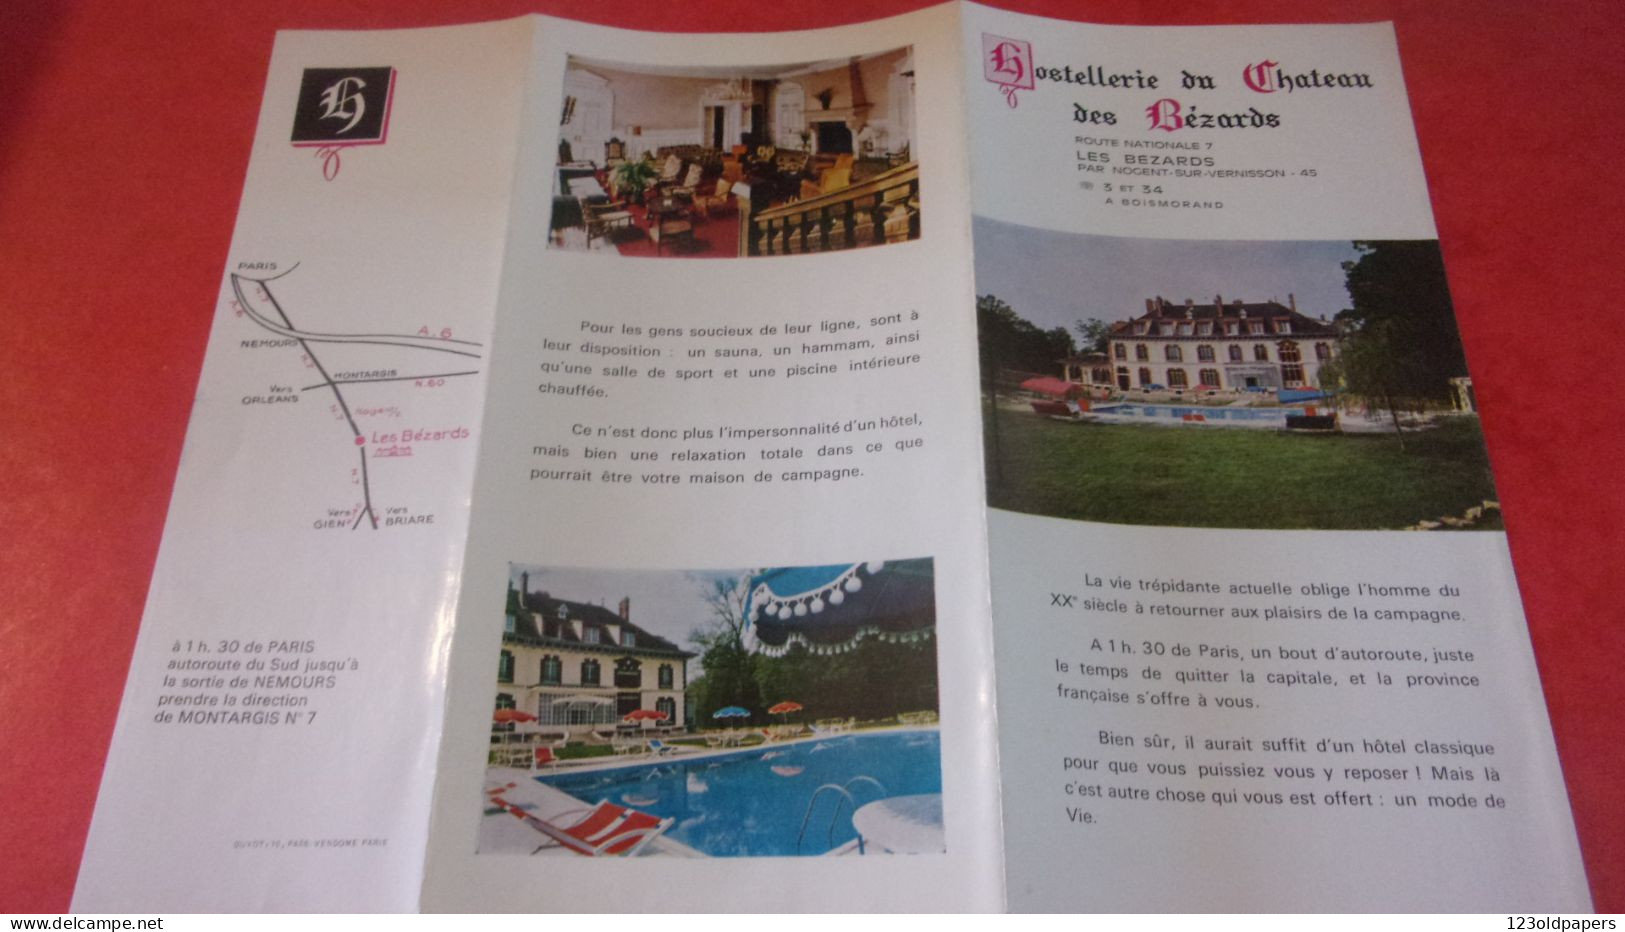 DEPLIANT LES BEZARDS HOSTELLERIE DU CHATEAU NOGENT VERNISSON - Tourism Brochures